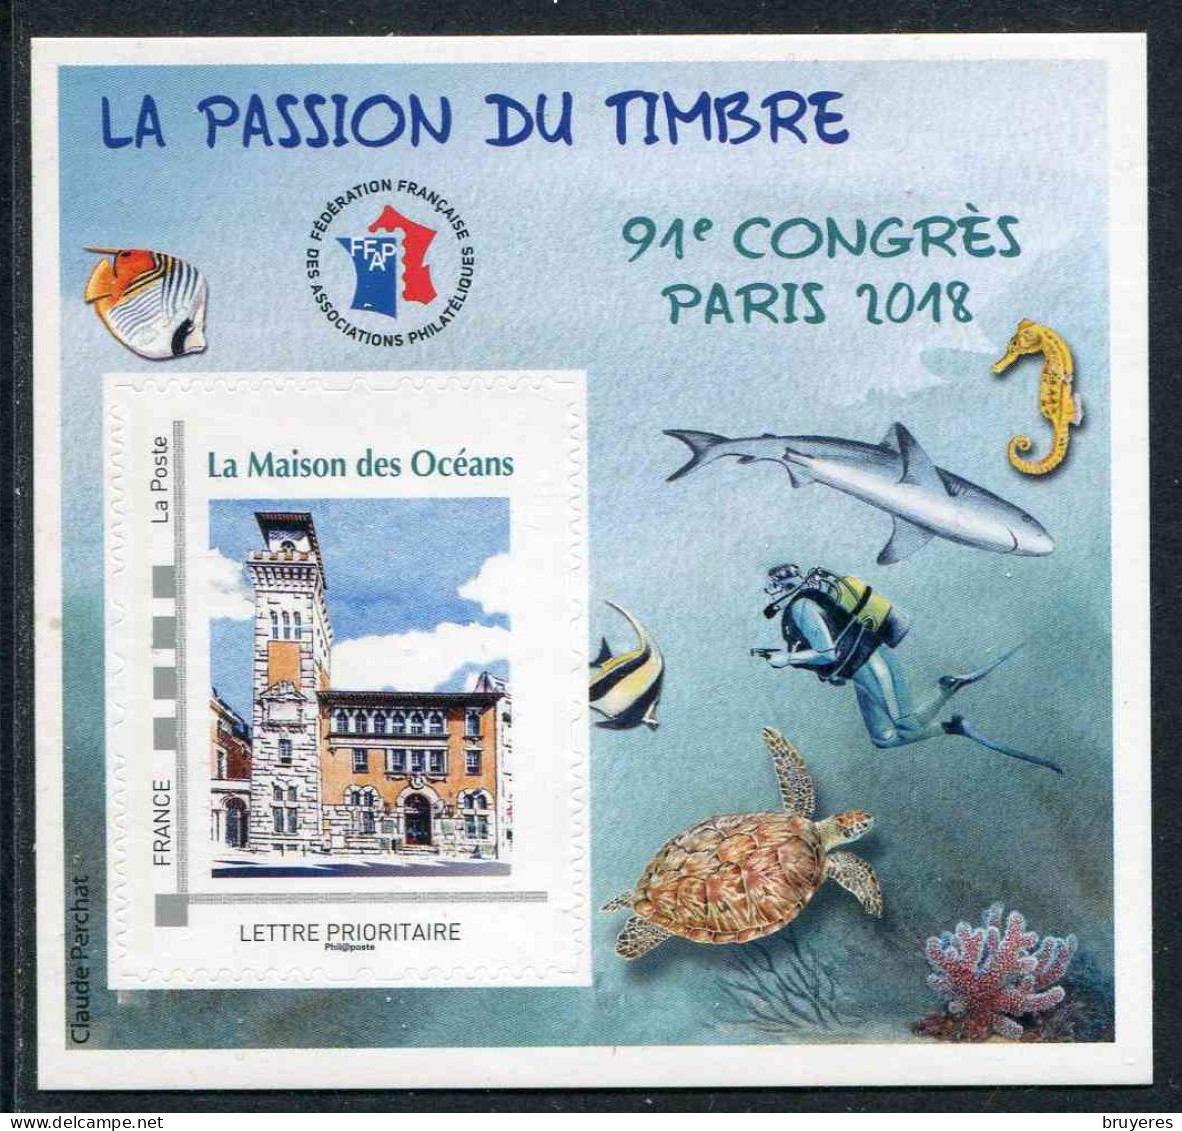 BLOC-SOUVENIR** De 2018 De La FFAP "91ème CONGRES PARIS - LA PASSION DU TIMBRE - La Maison Des Océans" N° 09495 - FFAP